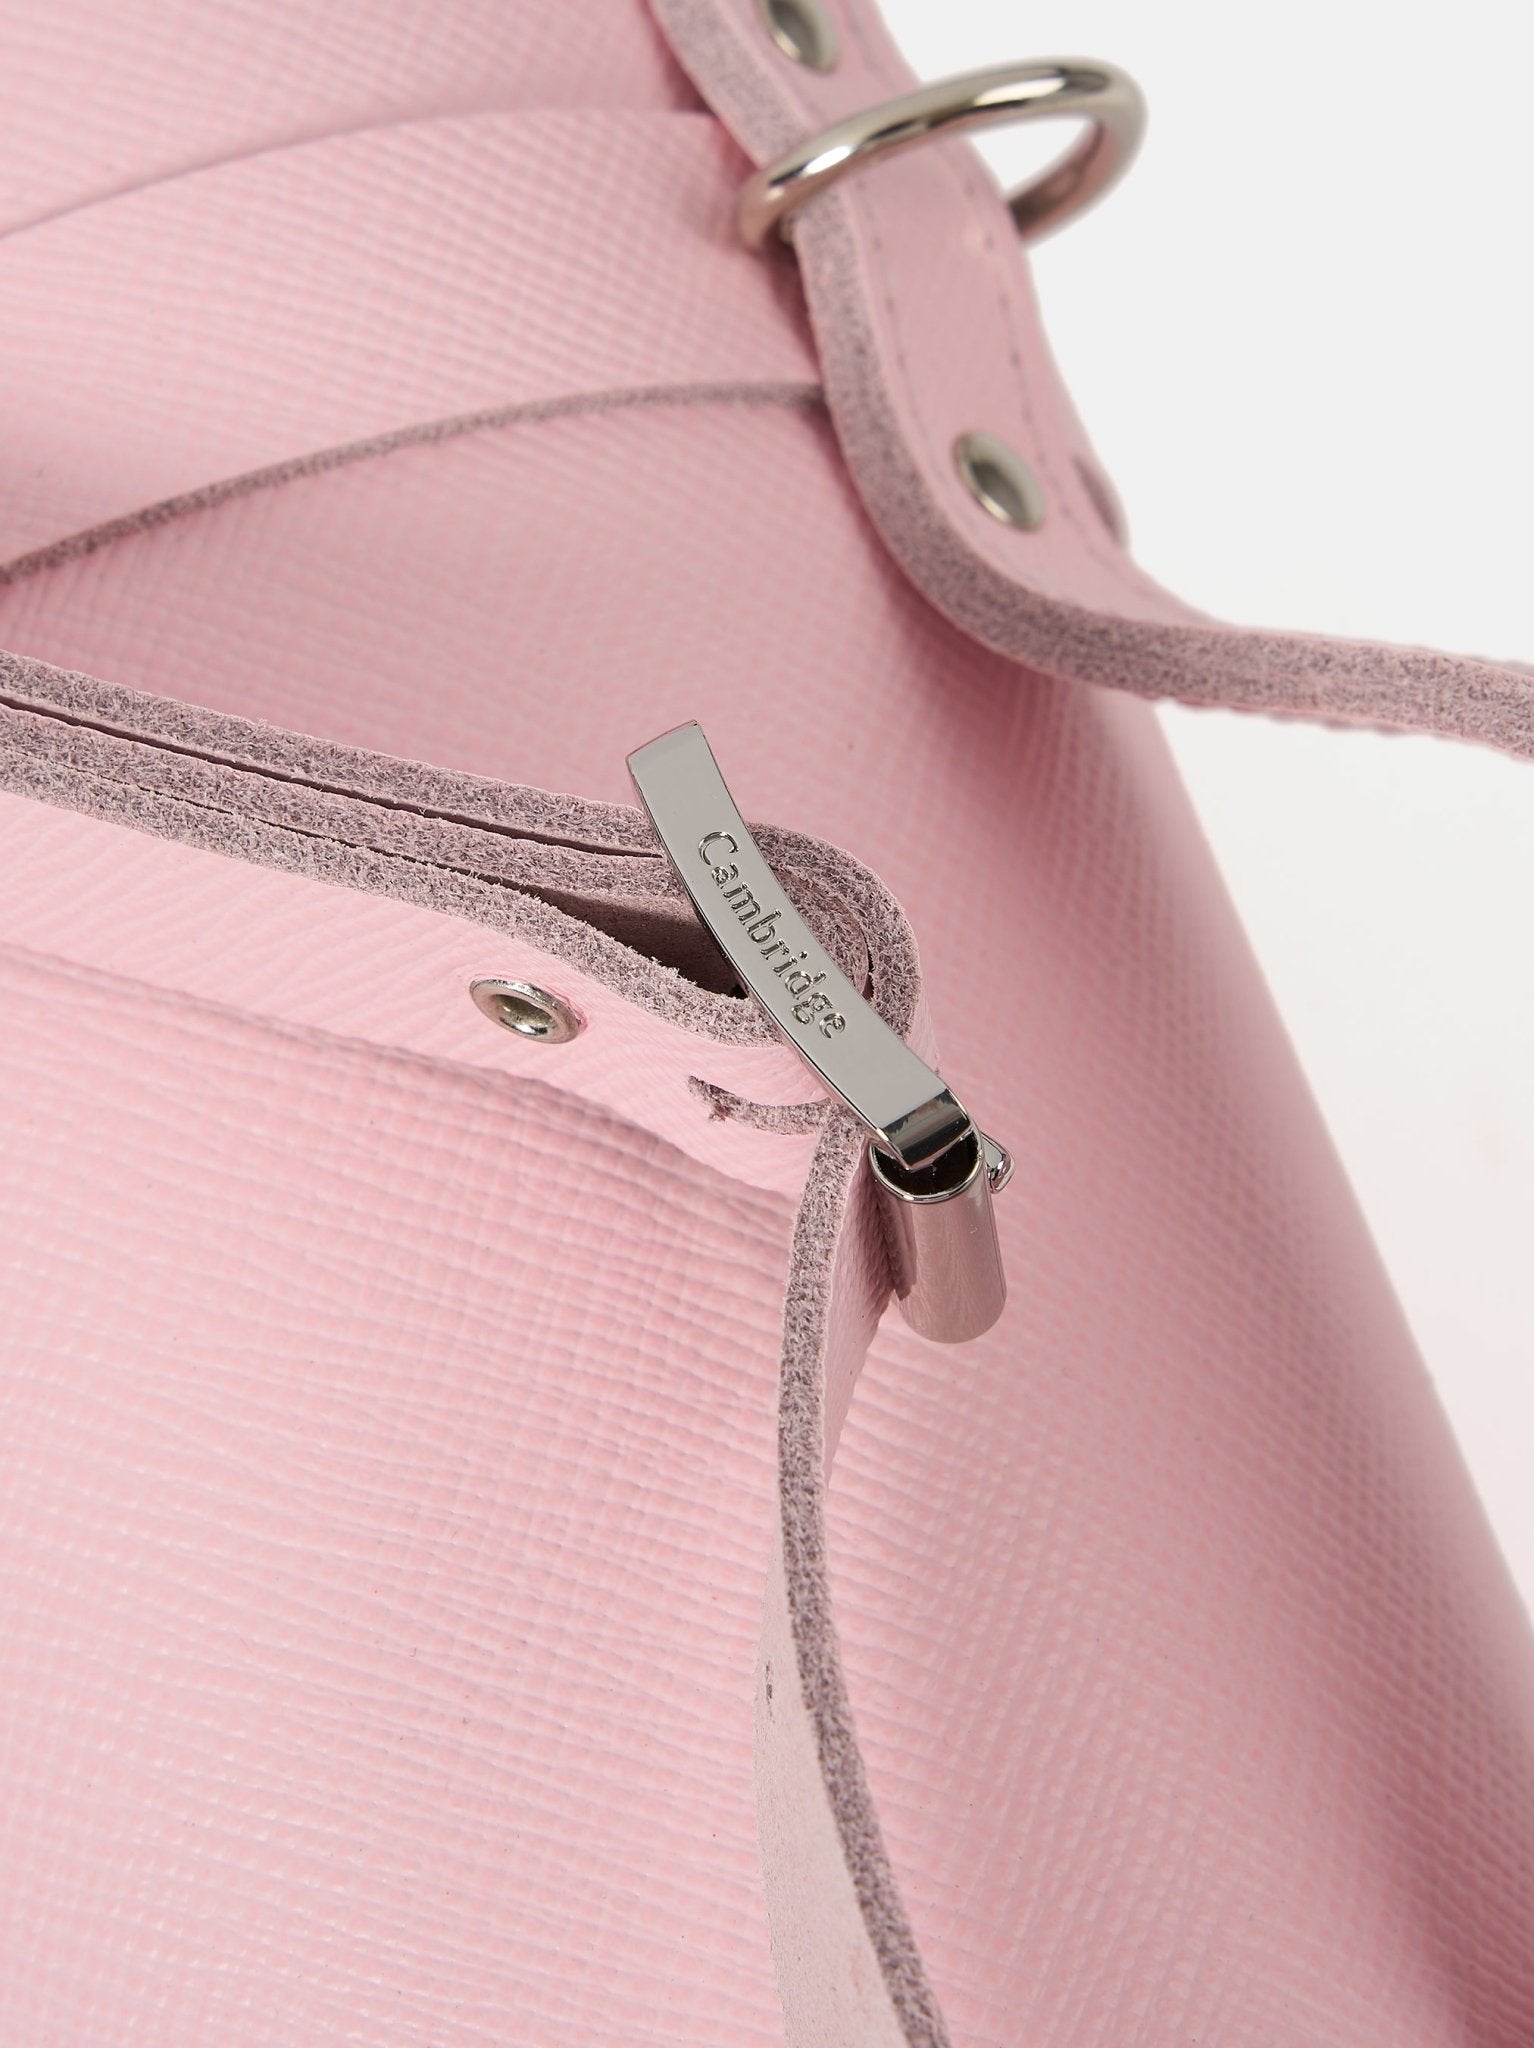 The Mini Bowls Bag - Fondant Pink Saffiano - The Cambridge Satchel Company EU Store